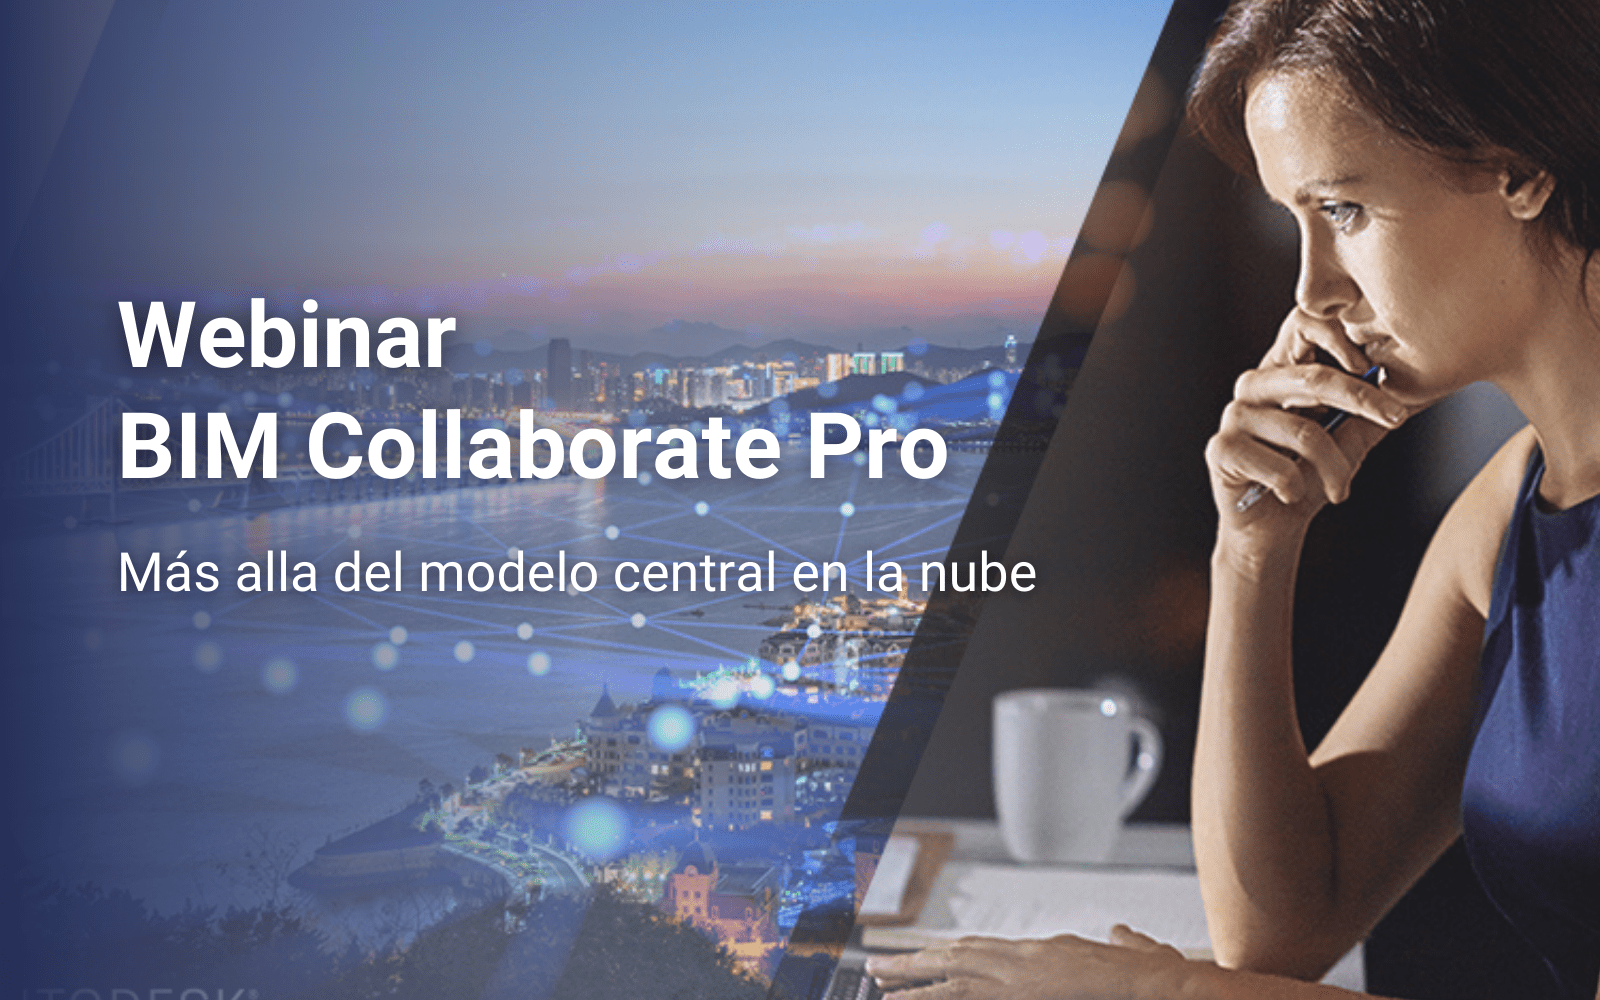 Webinar BIM Collaborate Pro, más allá del modelo central en la nube